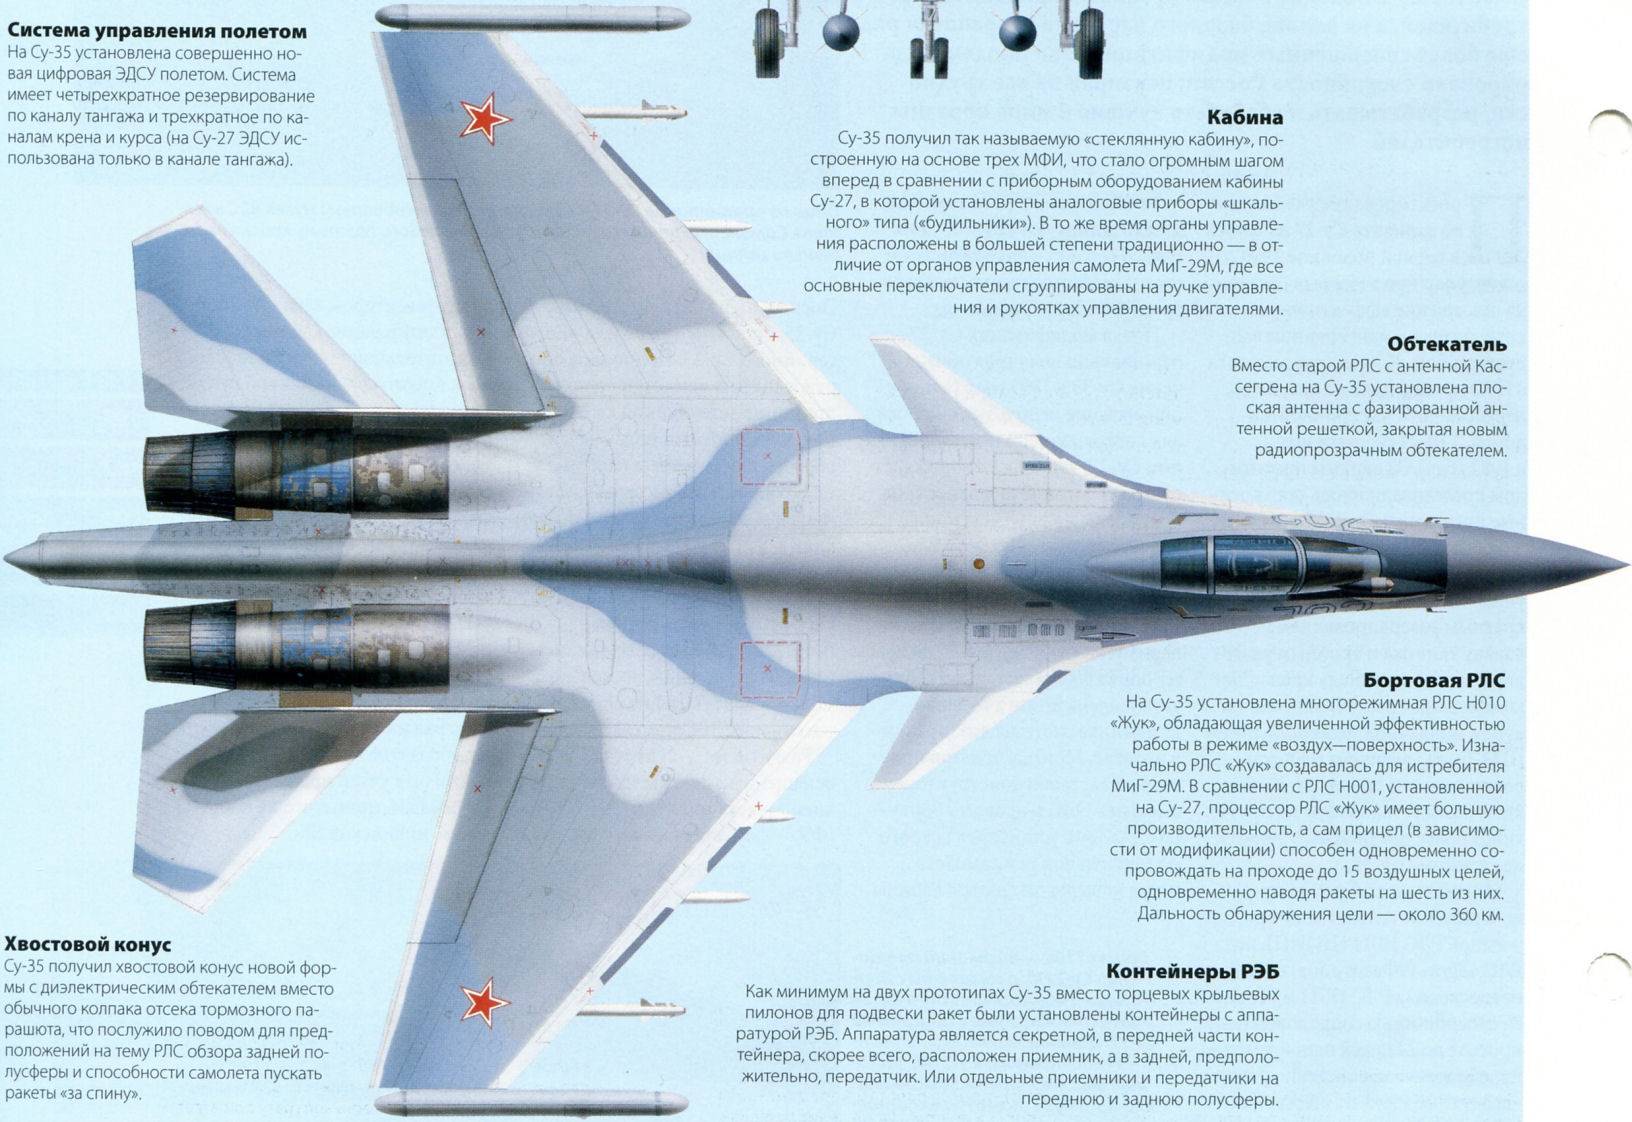 Су-35: фото су-35 и описание. качественные фотографии самолёта истребителя су-35.